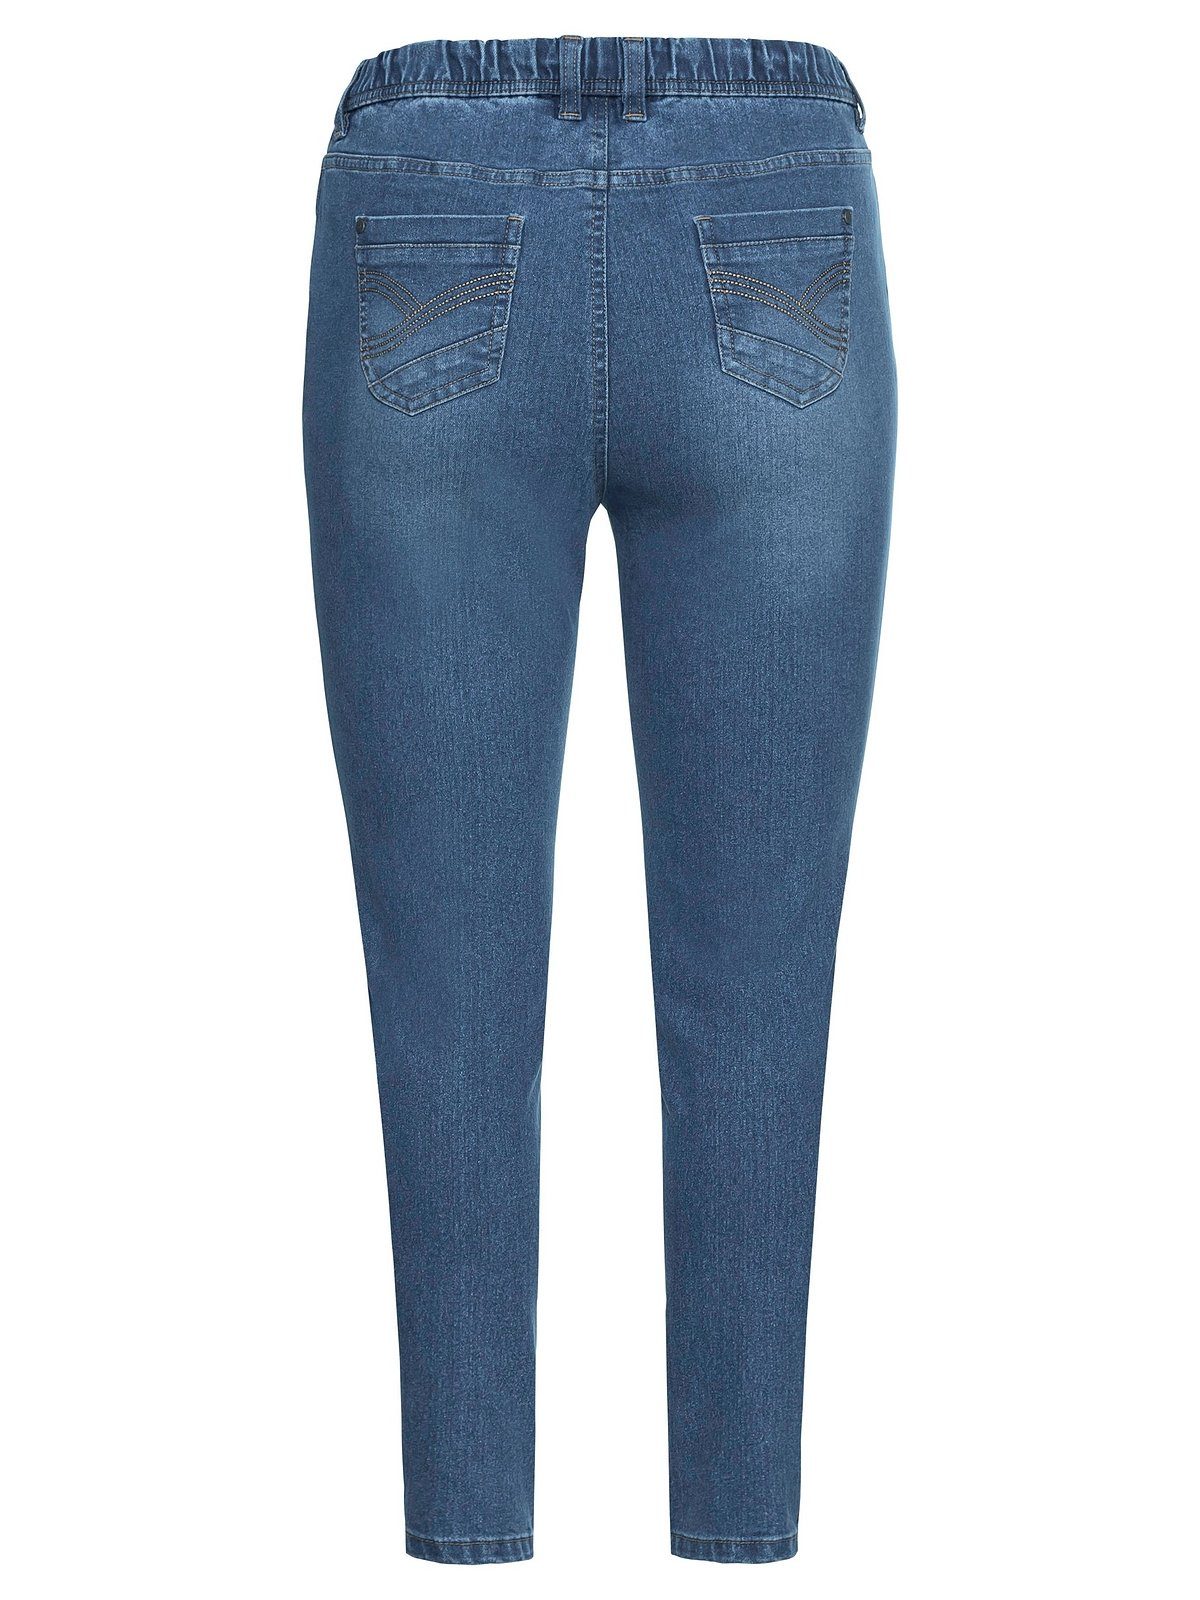 Sheego Stretch-Jeans Große Größen mit und Gürtelschlaufen light blue Denim used Gummibund